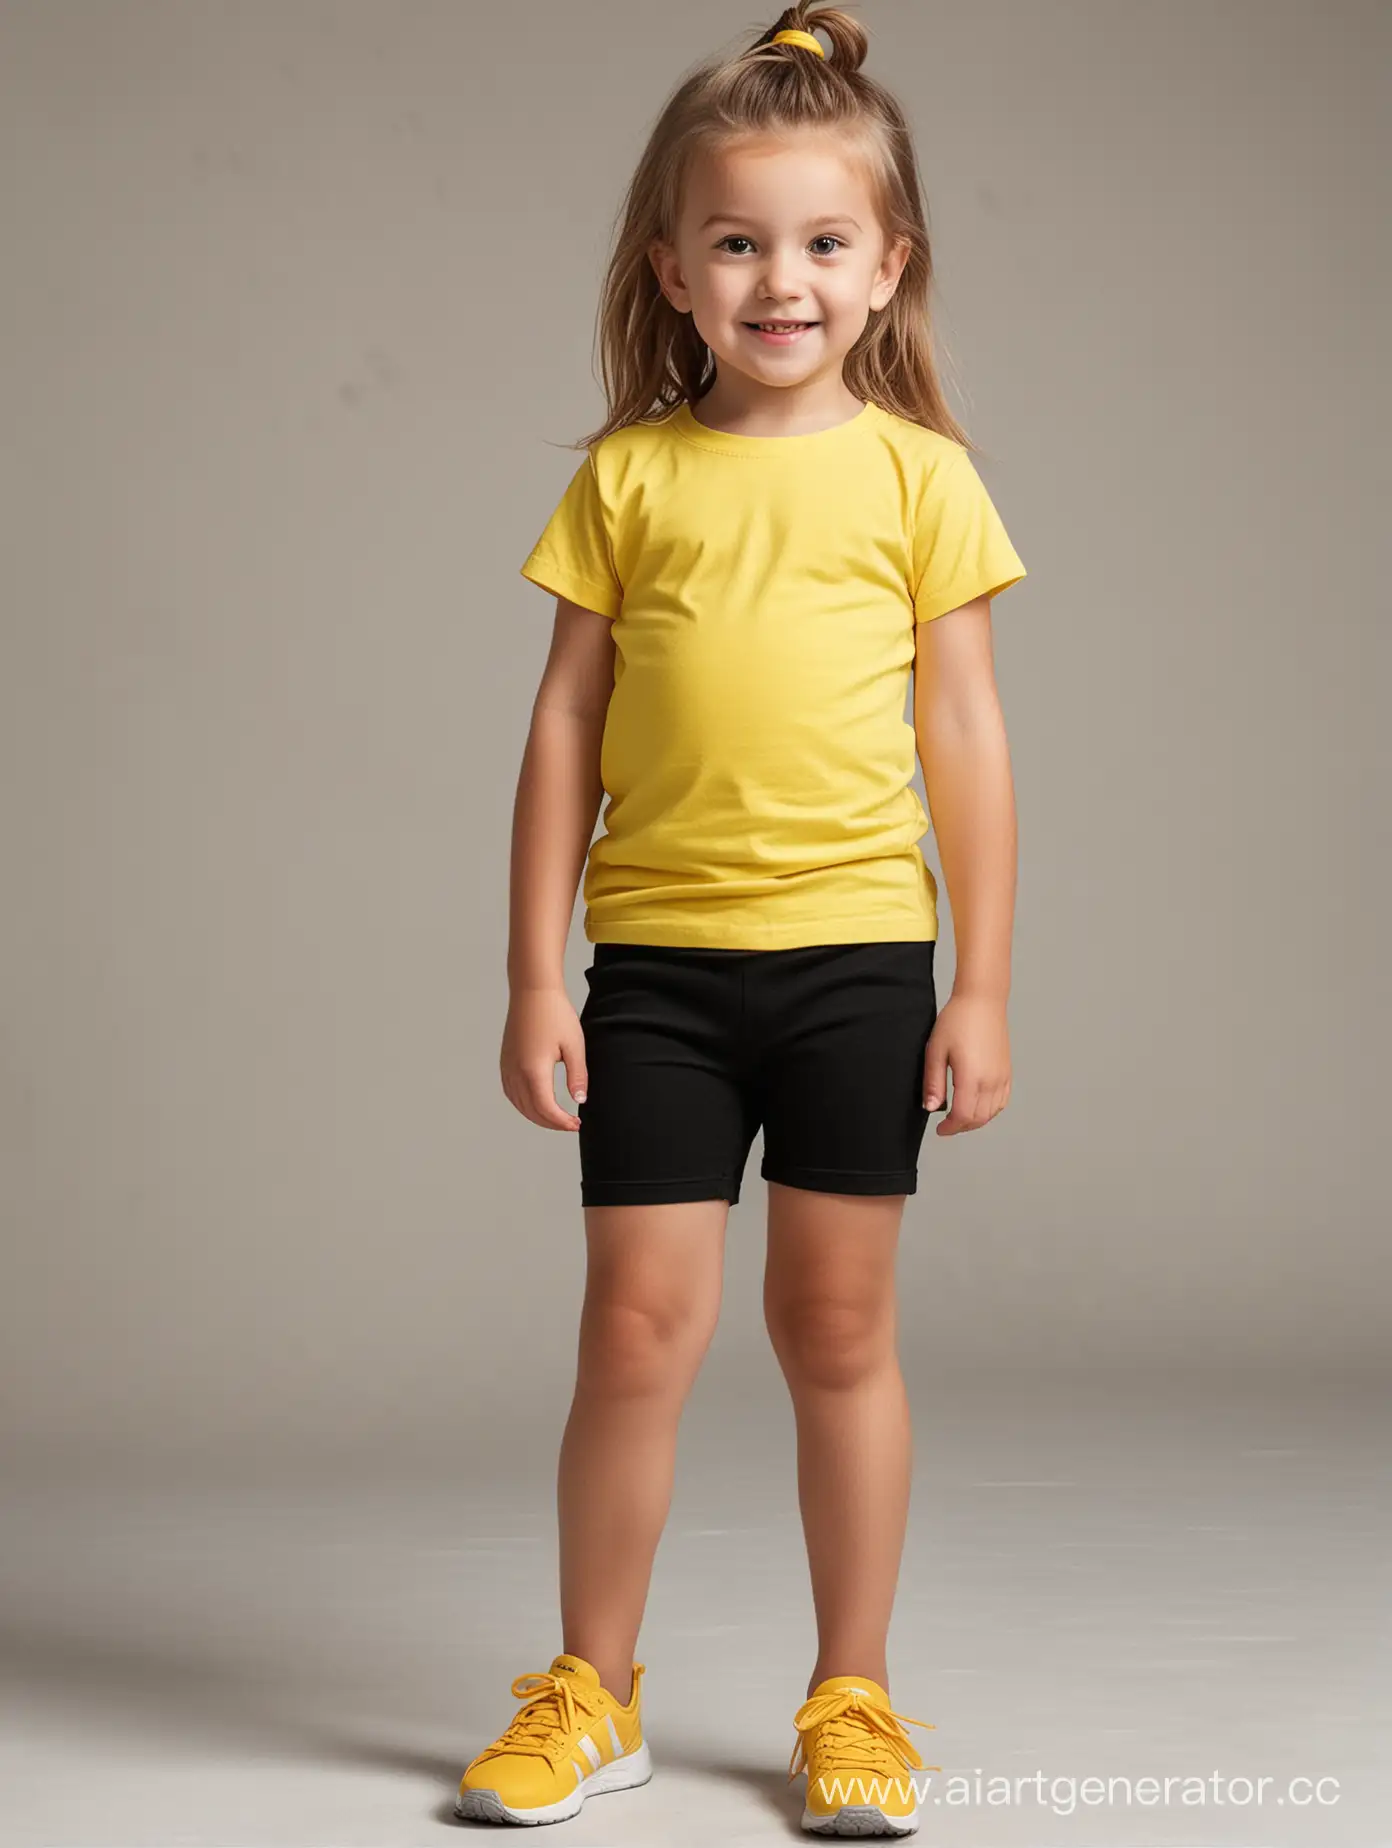 Создай изображение мальчика 5 лет в белой футболке и черных шортах в полный рост и девочки 5 лет в ярко желтой футболке и черных леггинсах в полный рост